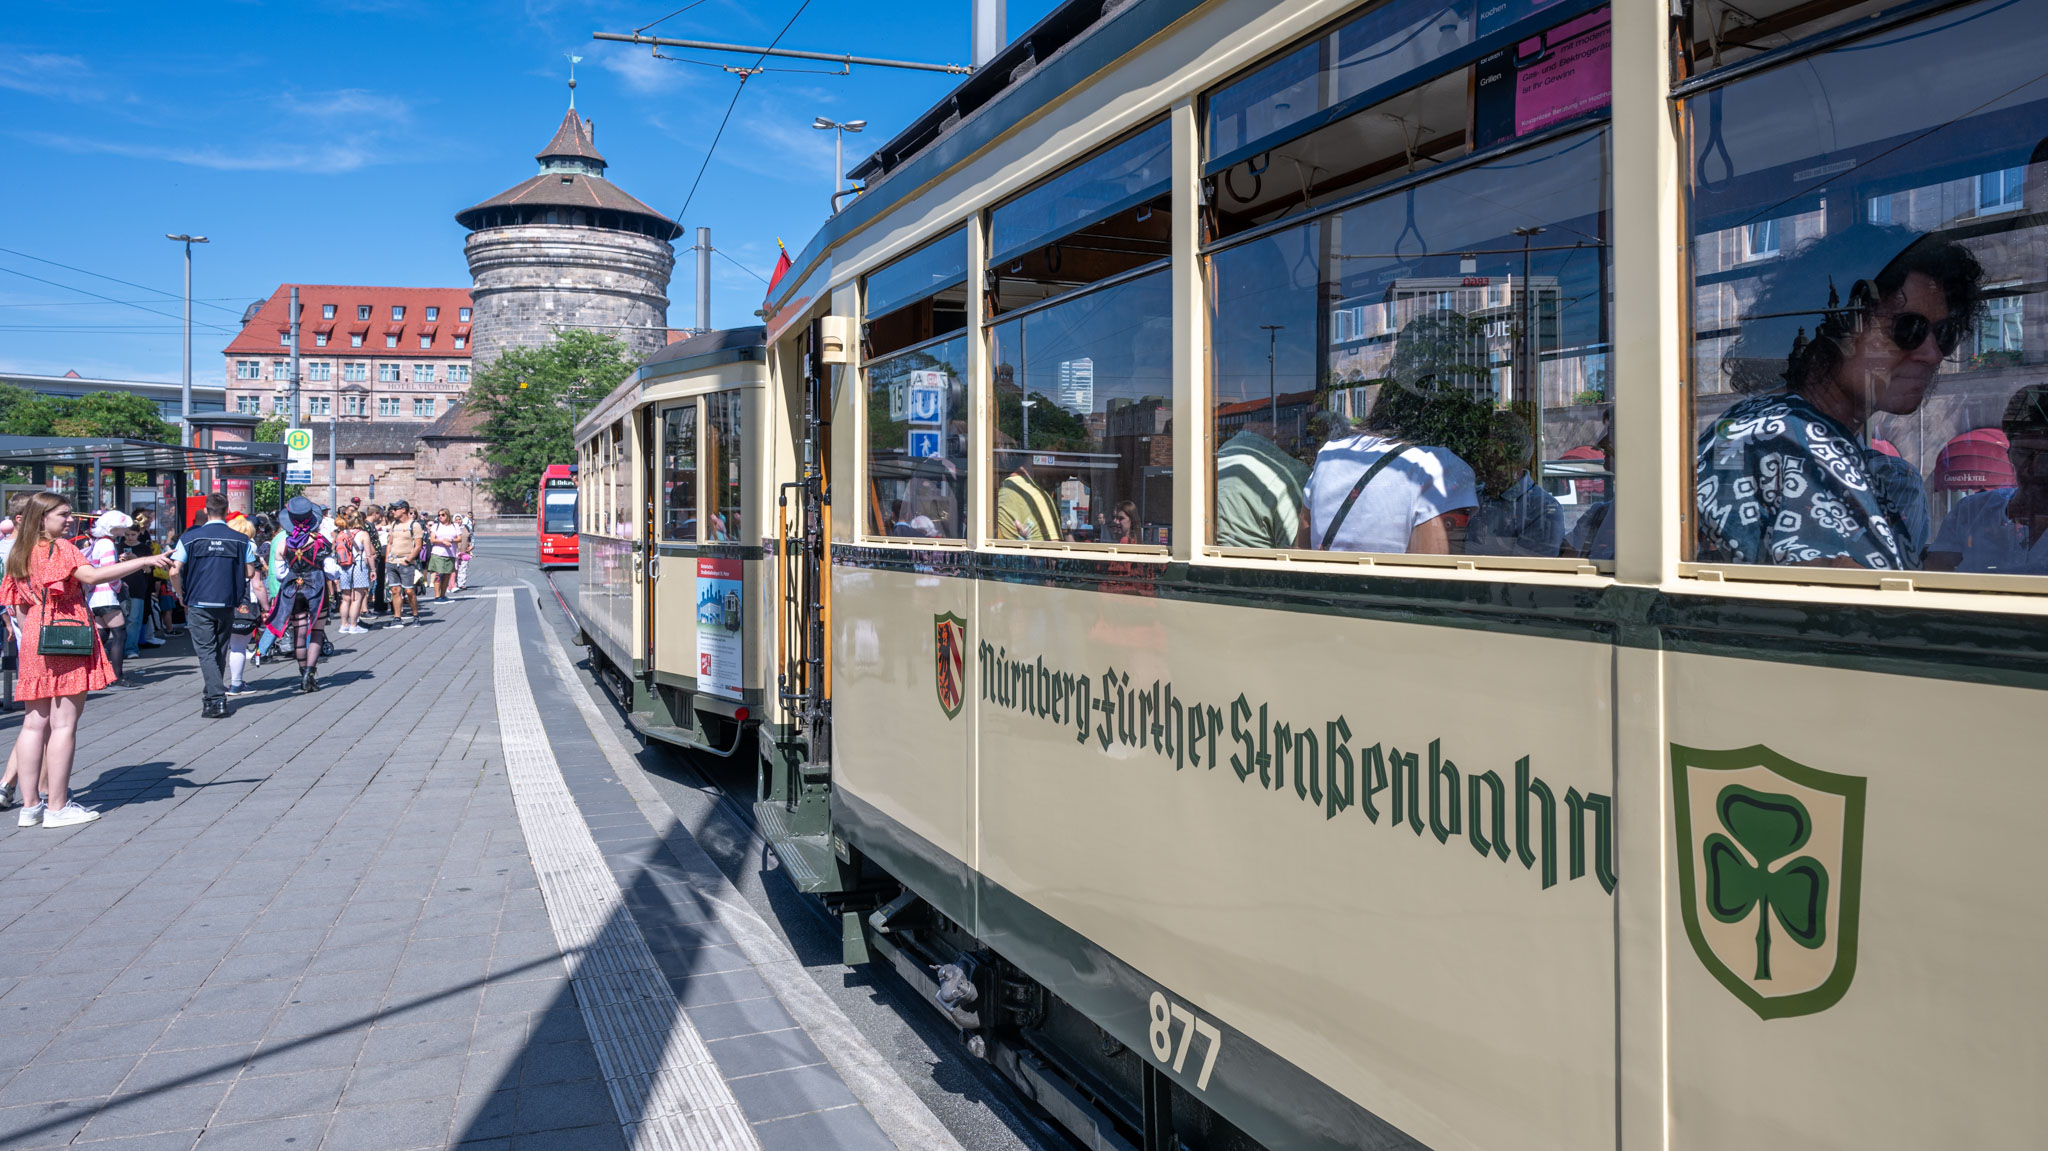 historische Nürnberg-Fürther Straßenbahn von 1935 am Nürnberger Hauptbahnhof vor dem Frauentorturm